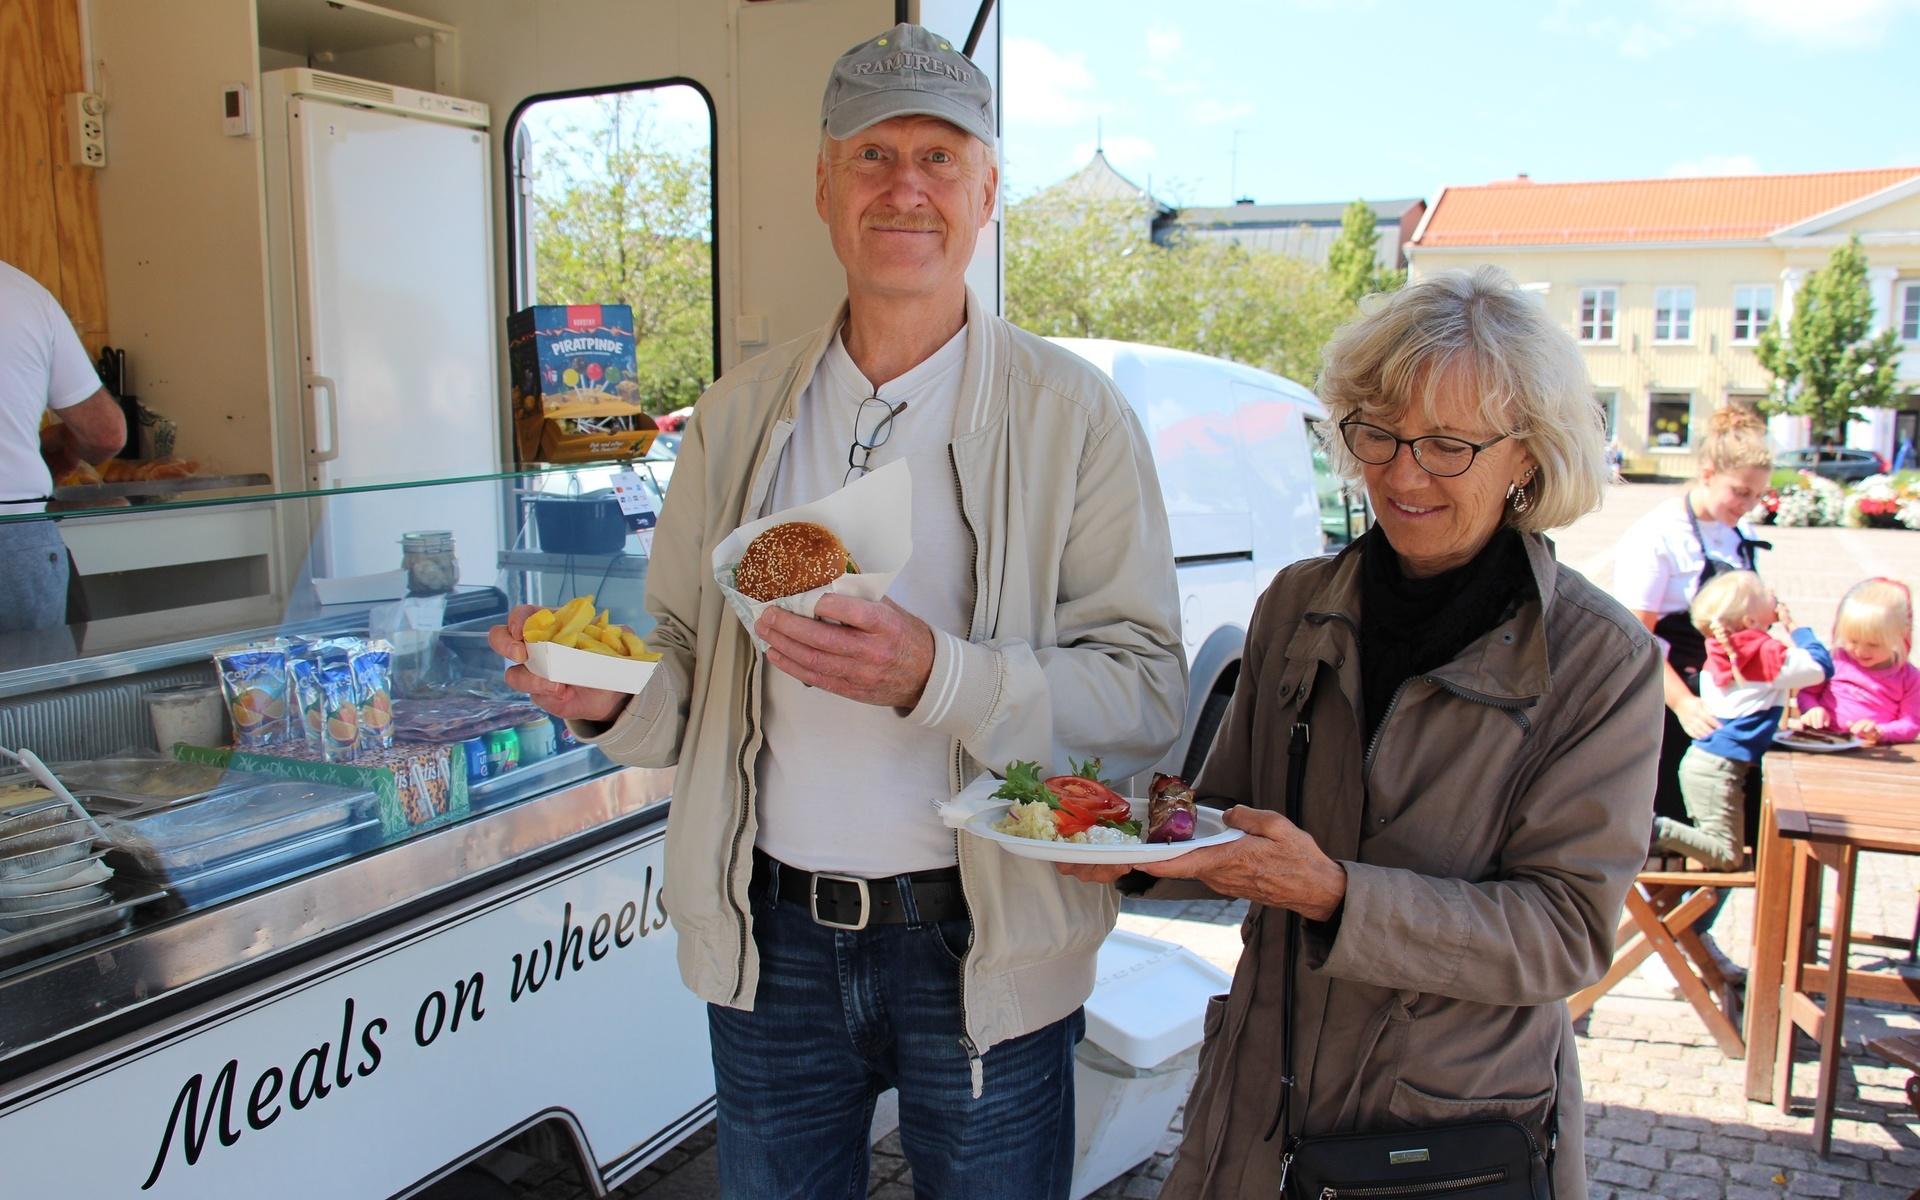 Mats och Anette Åhman var på besök i Kungsbacka och köpte en högrevsburgare med pommes och grillspett gjort på fläskkött. 